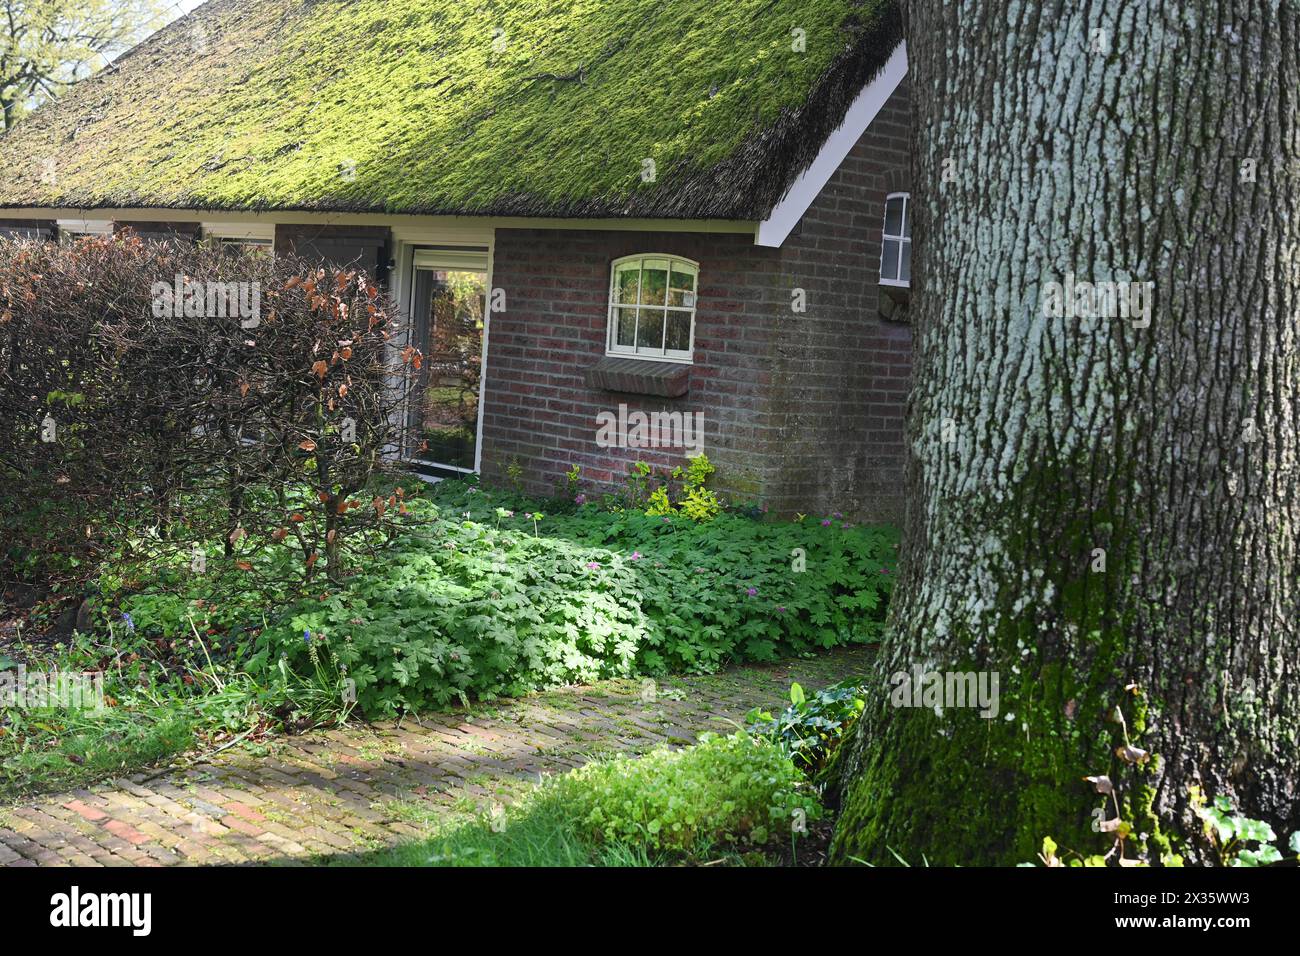 NL, Eesergroen: La primavera caratterizza il paesaggio, le città e gli abitanti della provincia di Drenthe nei Paesi Bassi. Il pittoresco villaggio di EES in Foto Stock